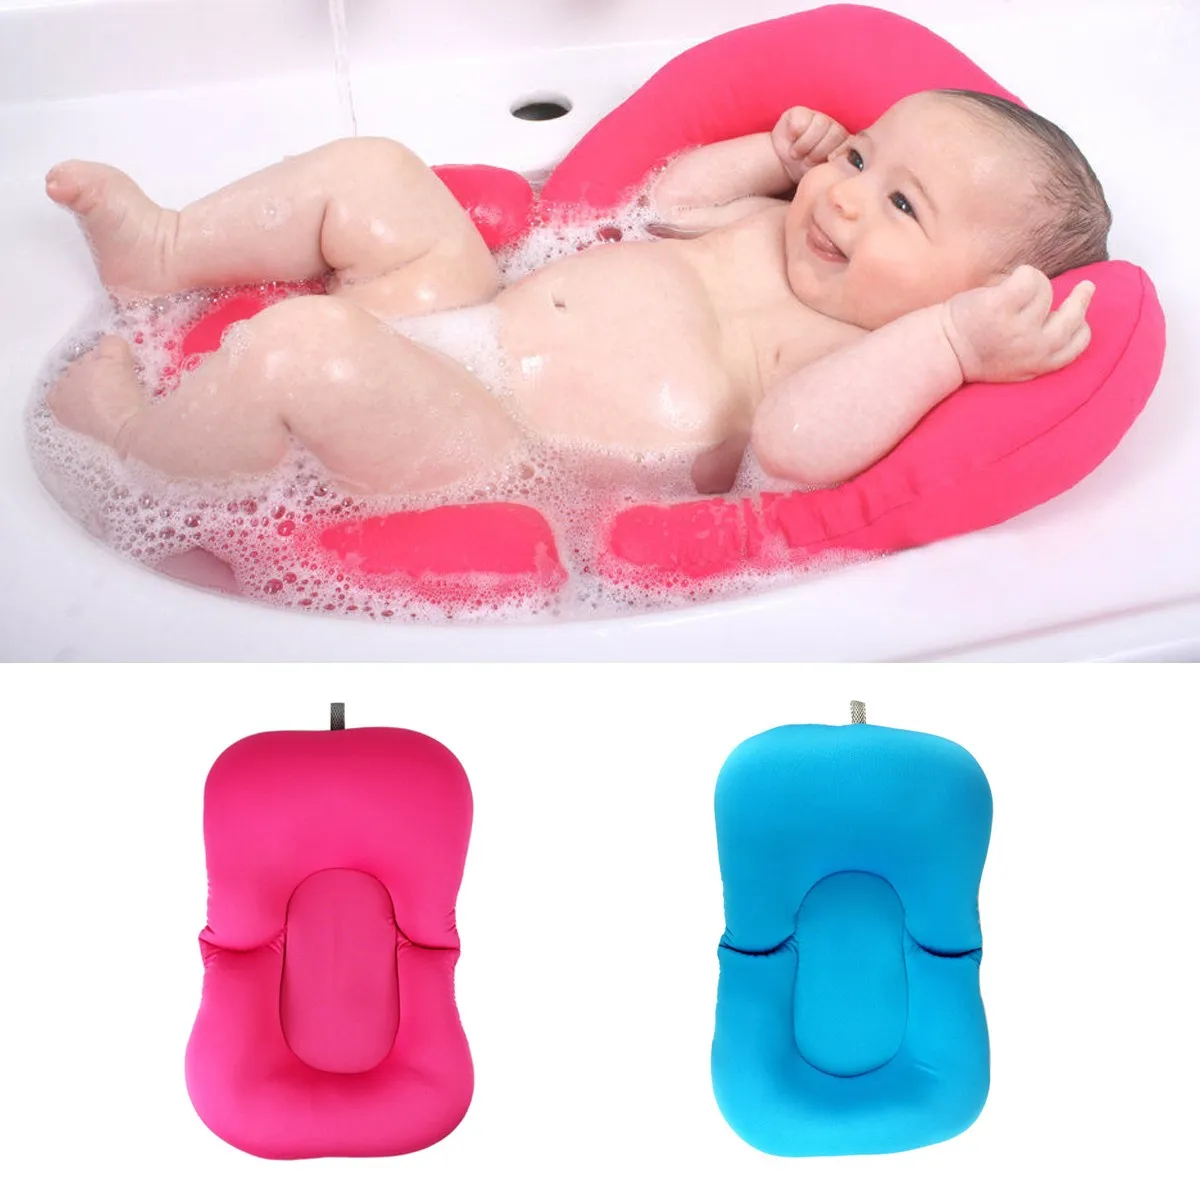 Infant Newborn Baby Bath Tub Pillow Pad Lounger Air Cushion